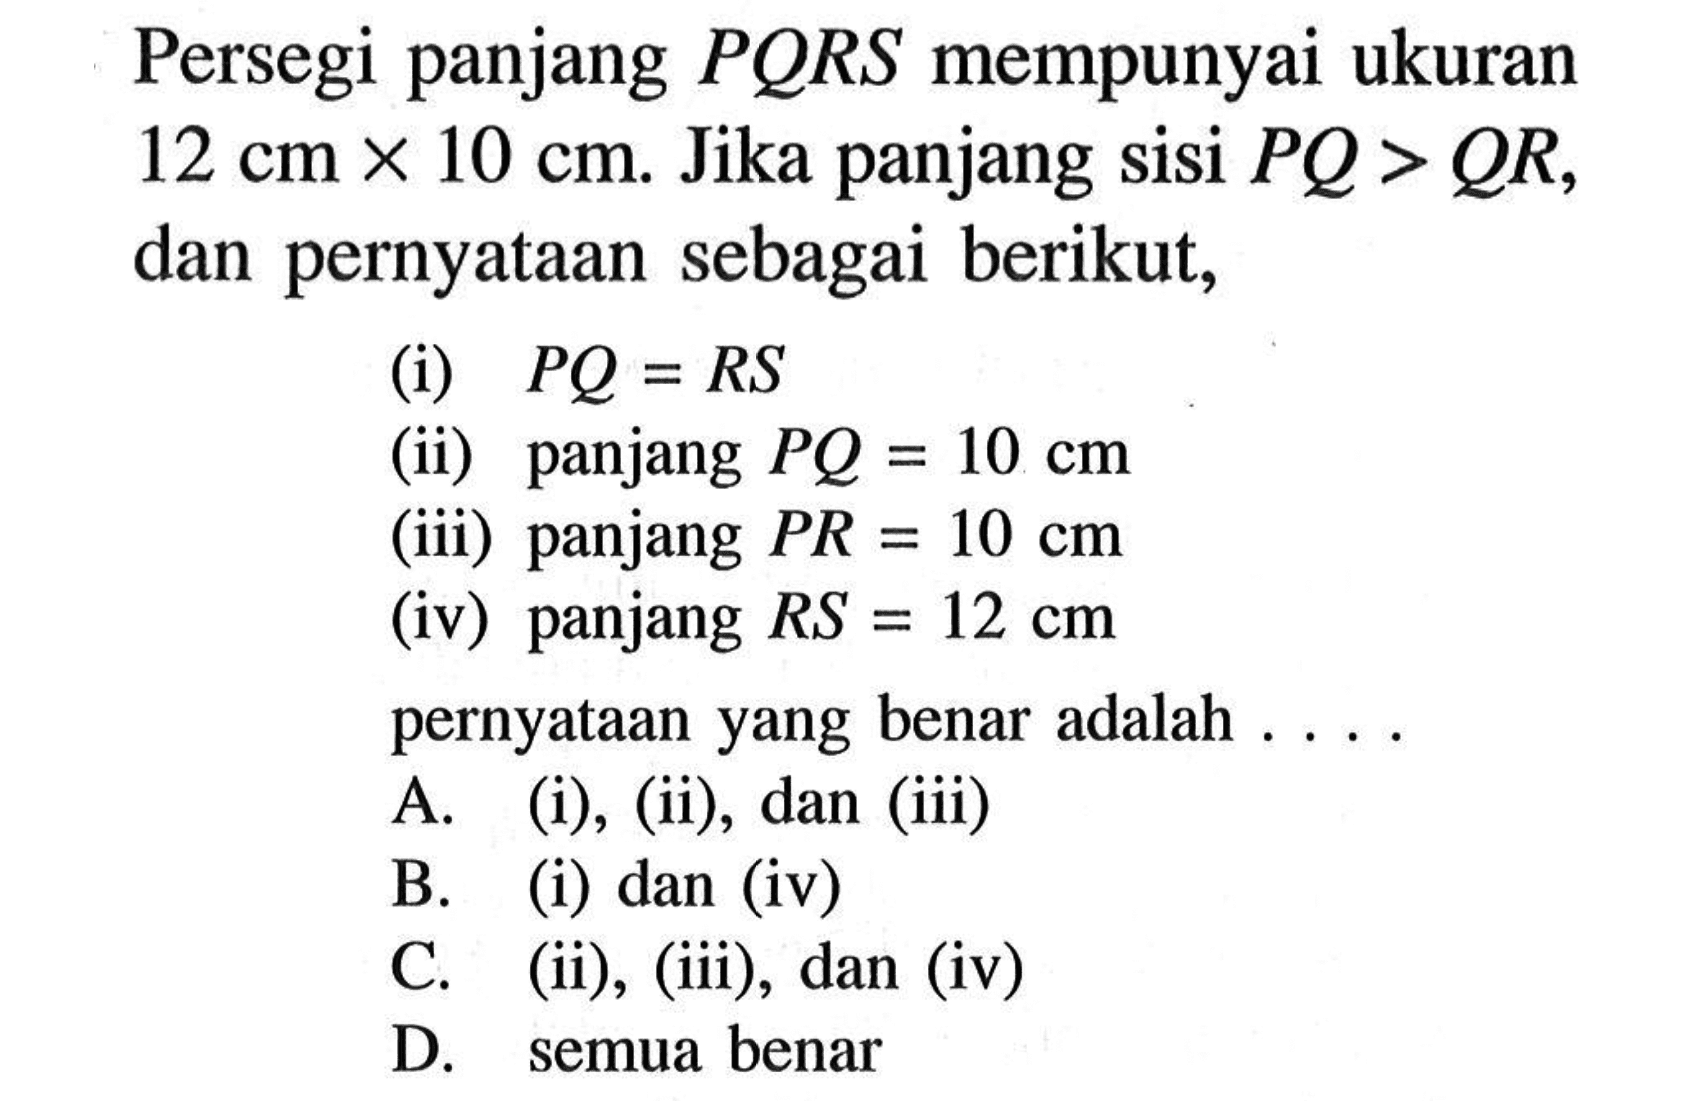 Persegi panjang PQRS mempunyai ukuran 12 cm x 10 cm. Jika panjang sisi PQ>QR, dan pernyataan sebagai berikut, (i) PQ=RS (ii) panjang PQ=10 cm (iii) panjang PR=10 cm (iv) panjang RS=12 cm pernyataan yang benar adalah ... .